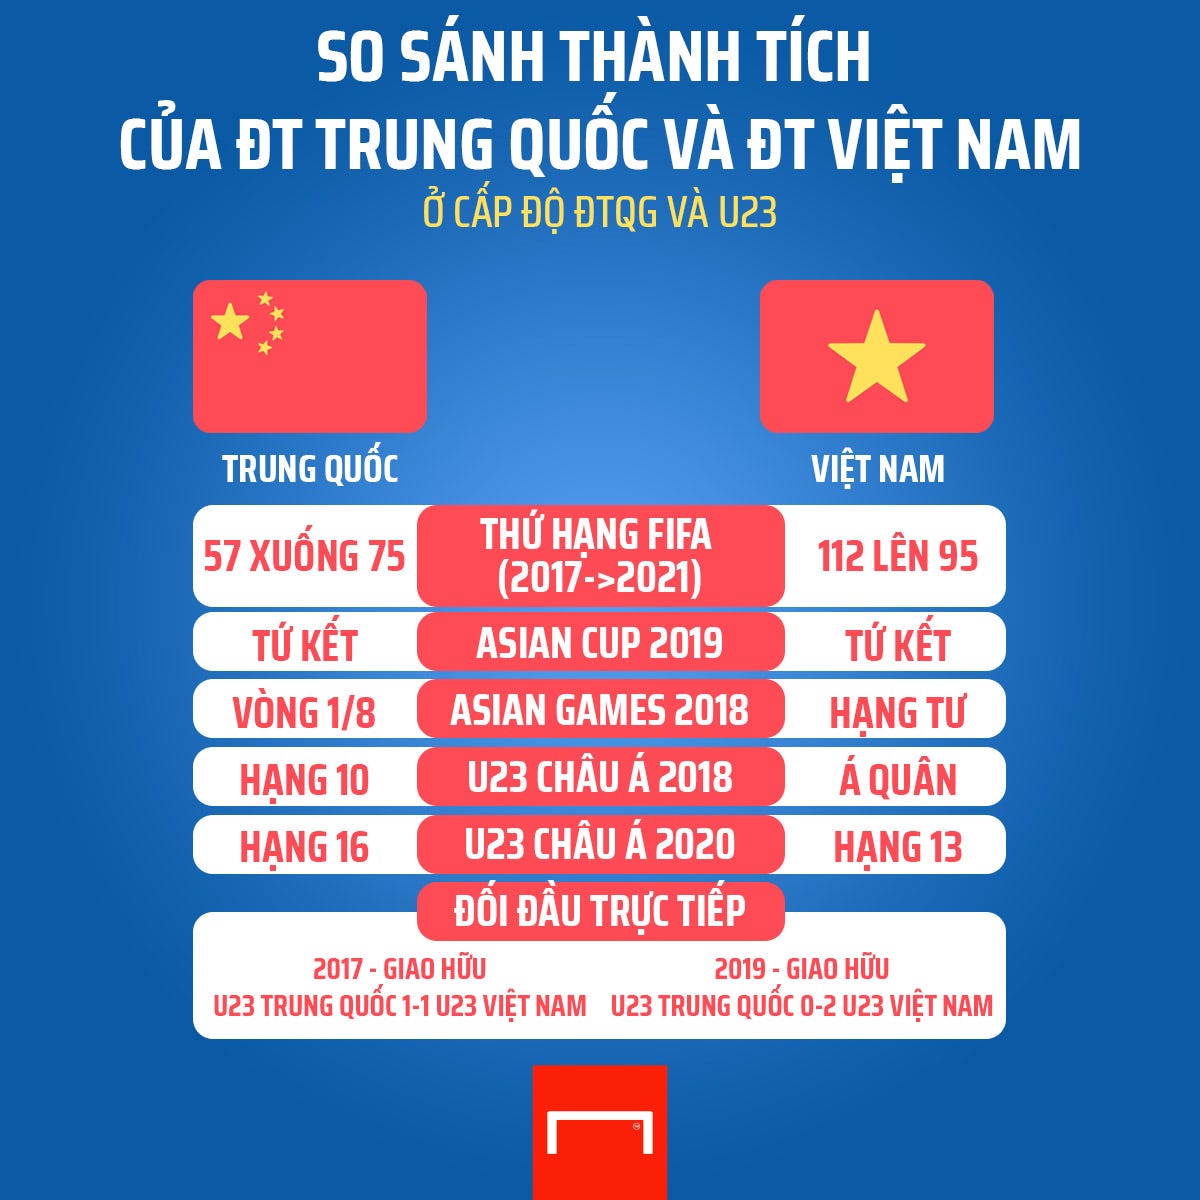 China Vietnam